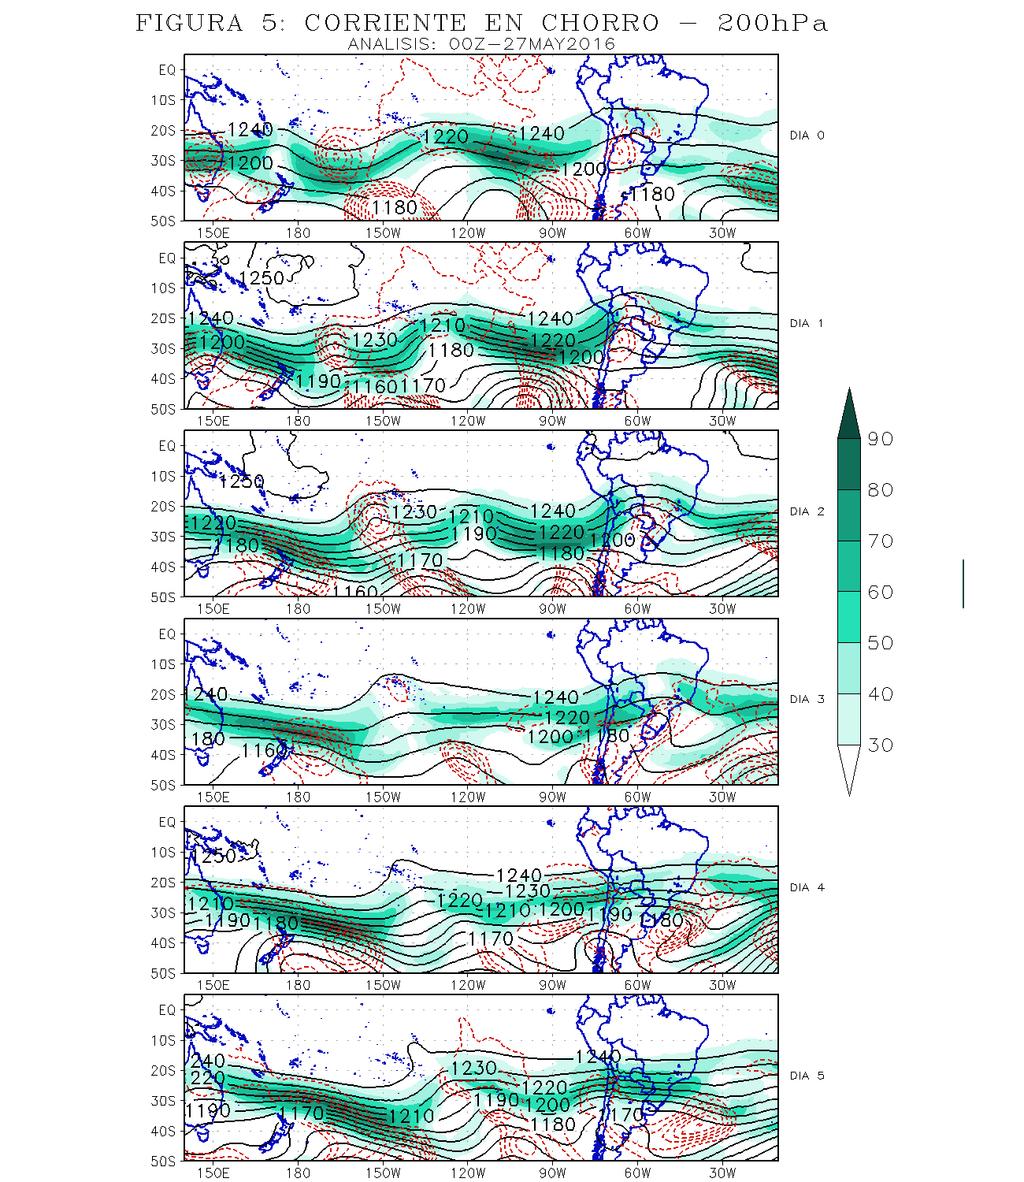 ANÁLISIS DE NIVELES ALTOS A lo largo del periodo de pronóstico el Jet Subtropical continúa posicionado sobre la sierra sur; adquiriendo una configuración más zonal a partir del día 4.